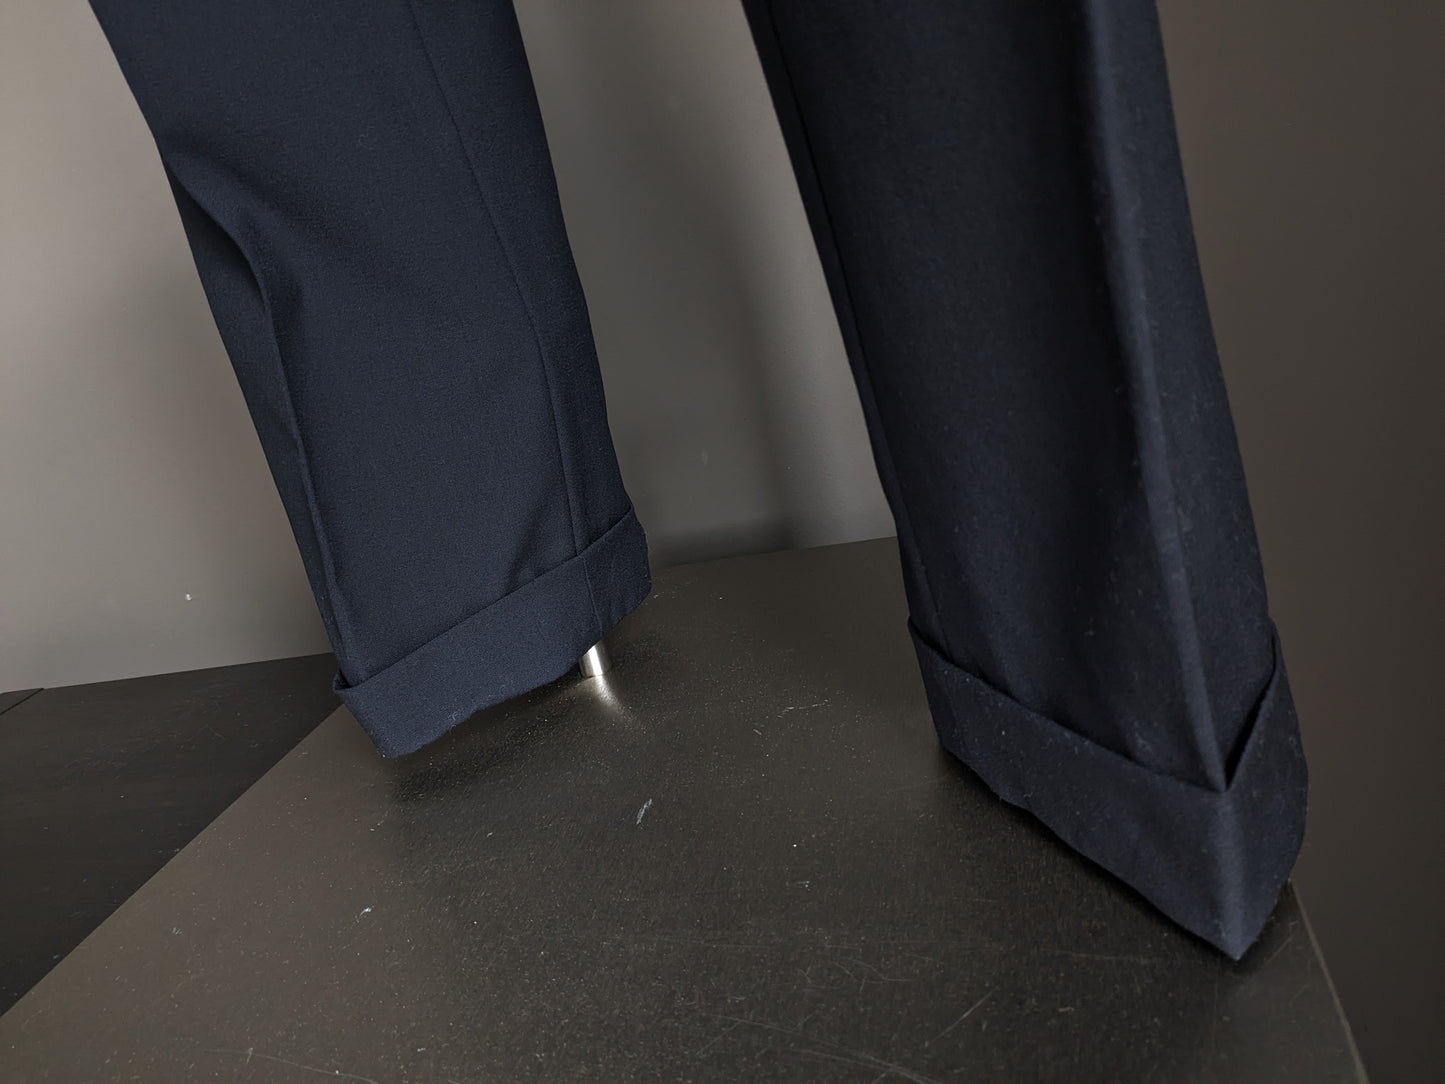 Pantaloni di lana con copertura. Colorato blu scuro. Taglia 52 / L. #500.